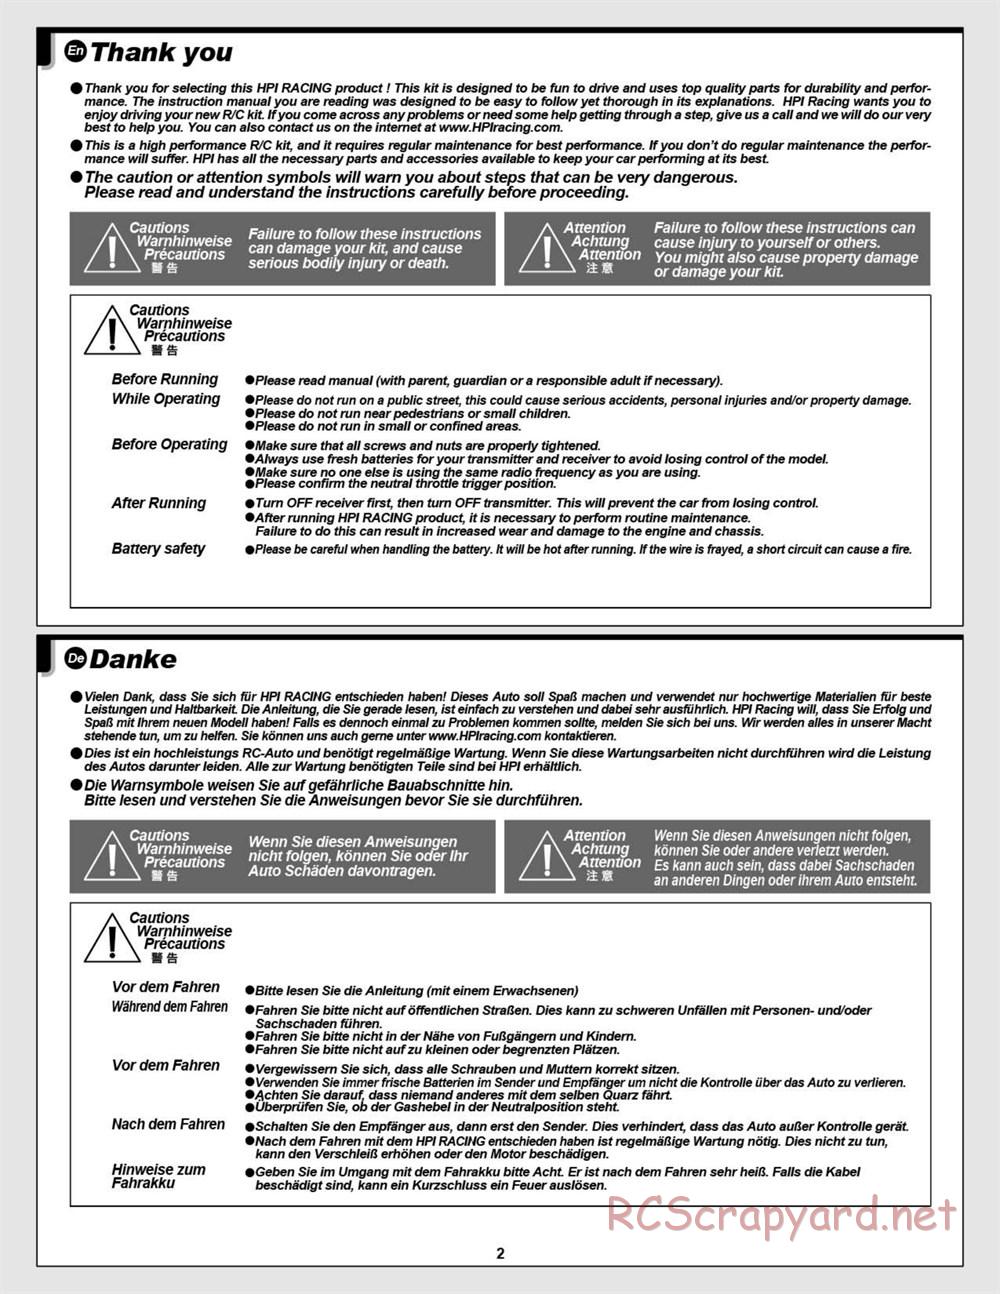 HPI - Vorza Flux HP - Manual - Page 2